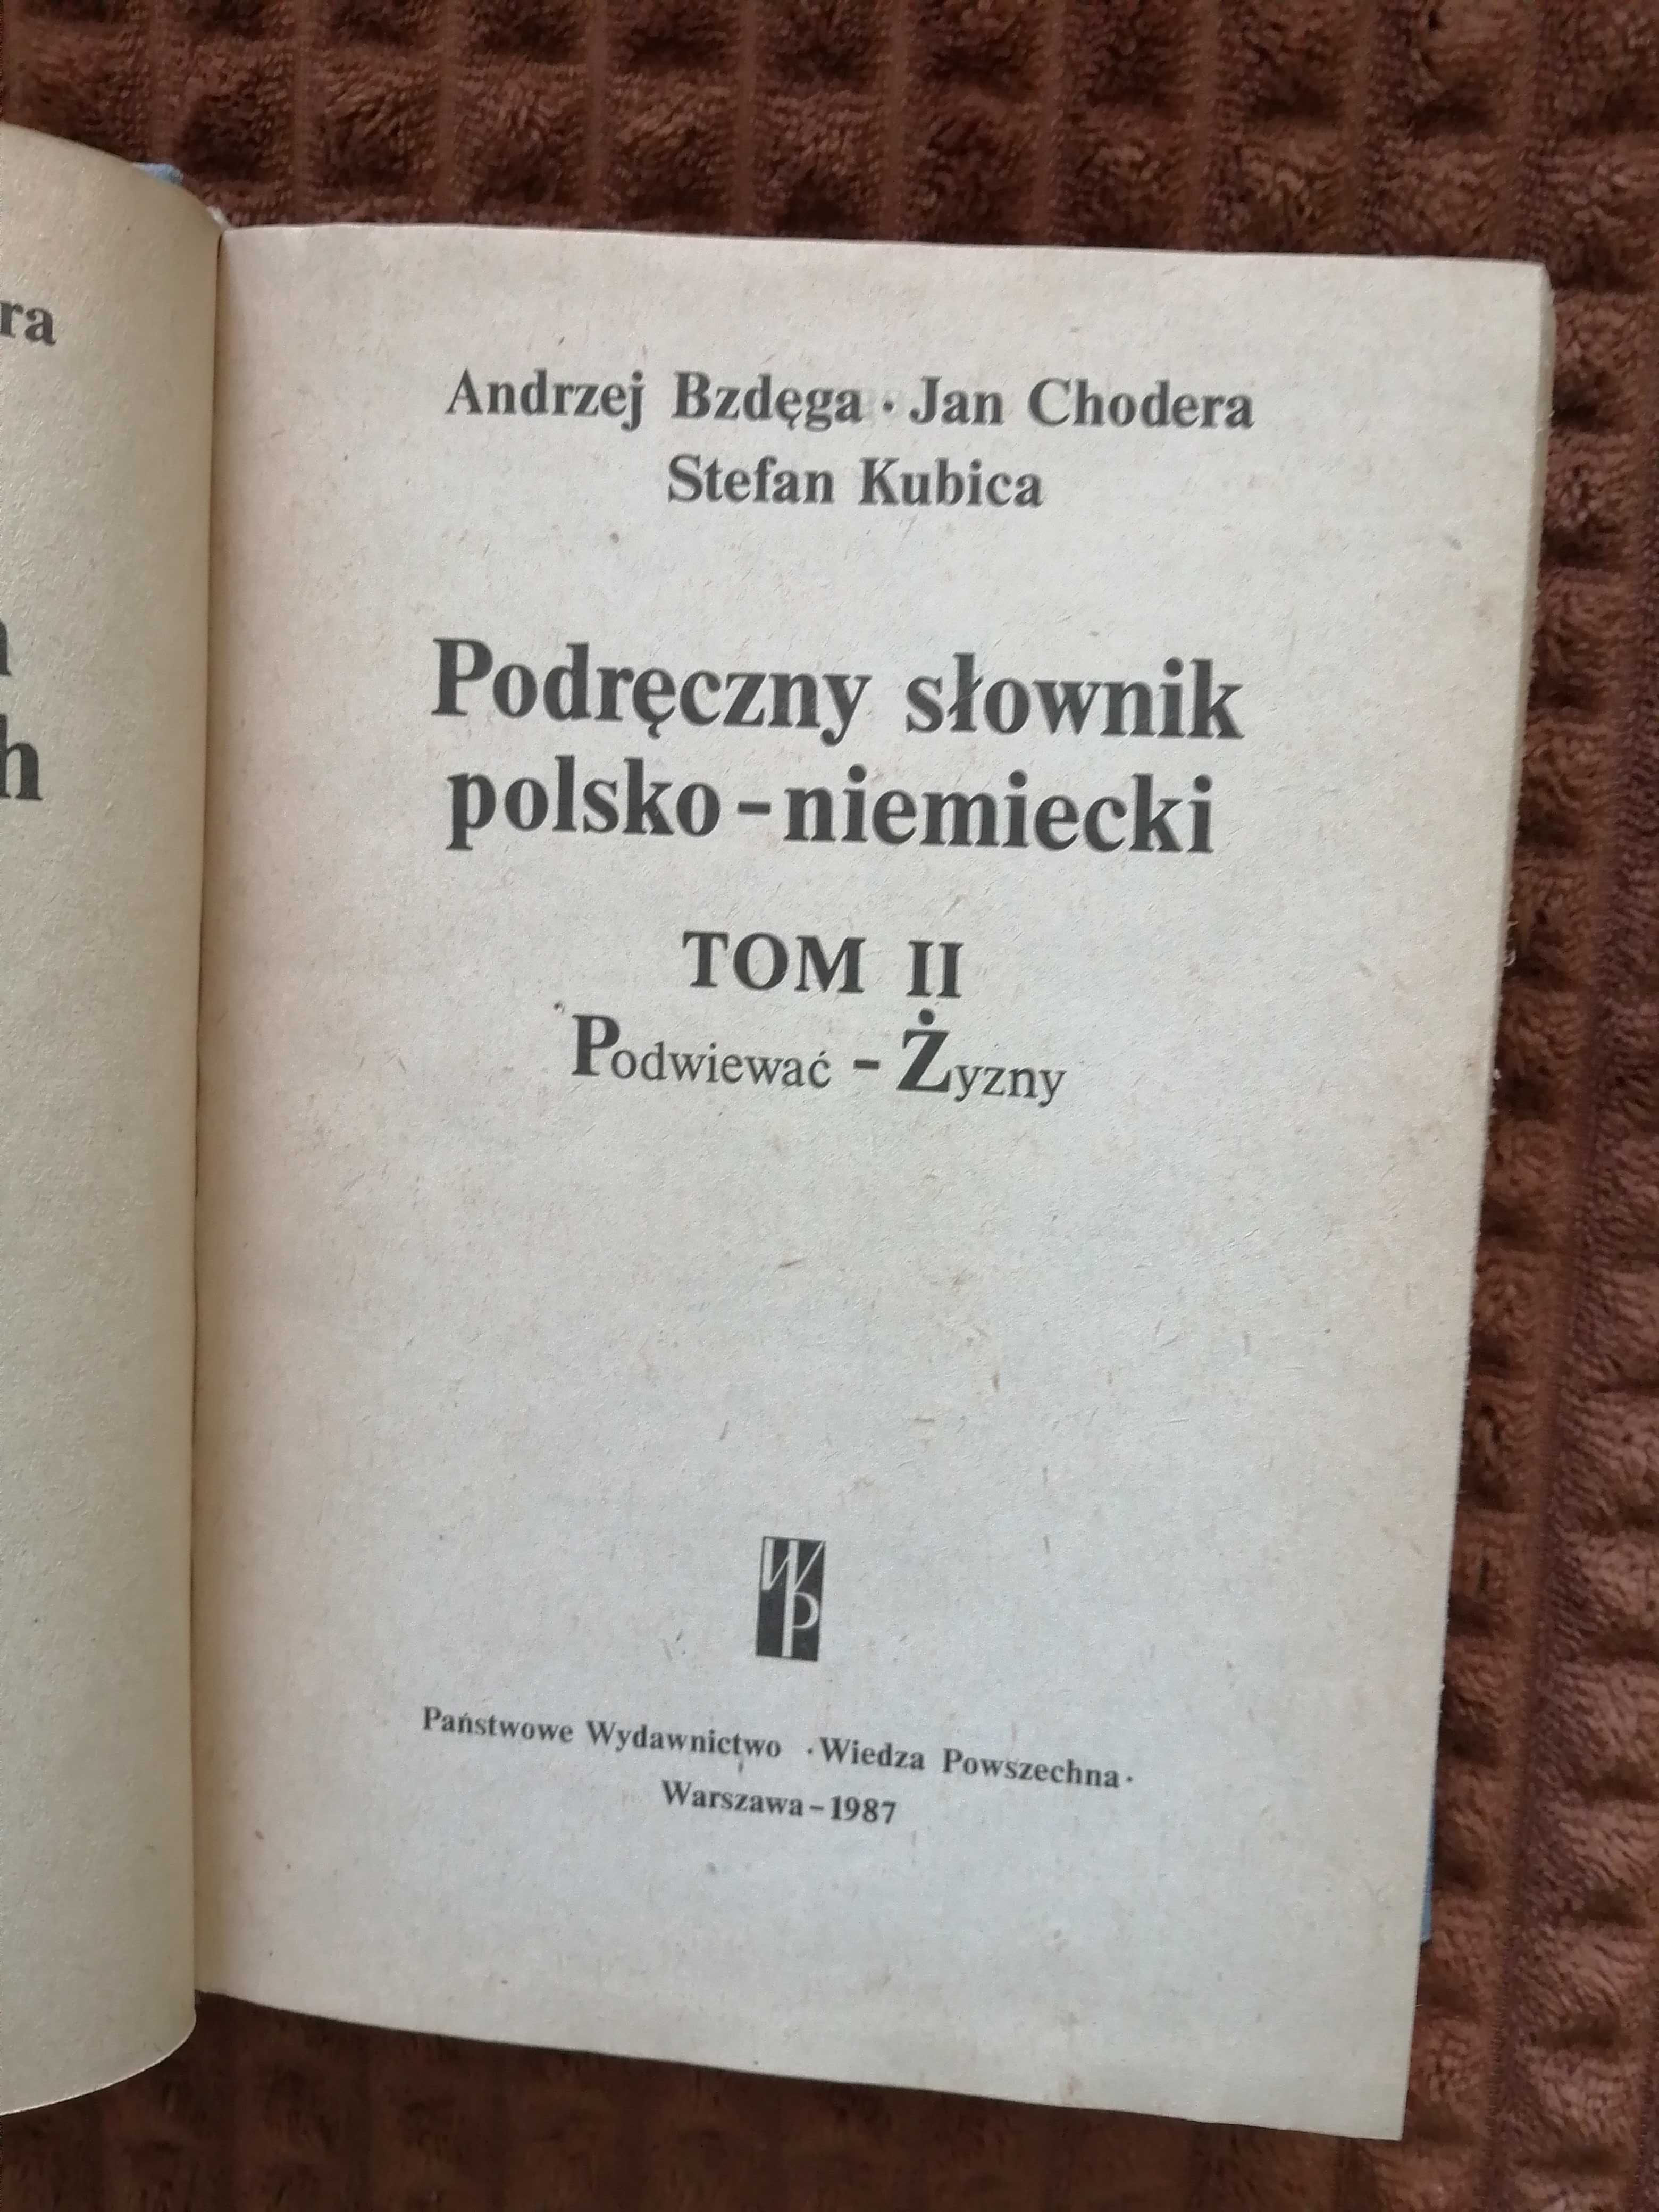 Podręczny słownik polsko-niemiecki, A. Bzdęga, J. Chodera, S. Kubica,